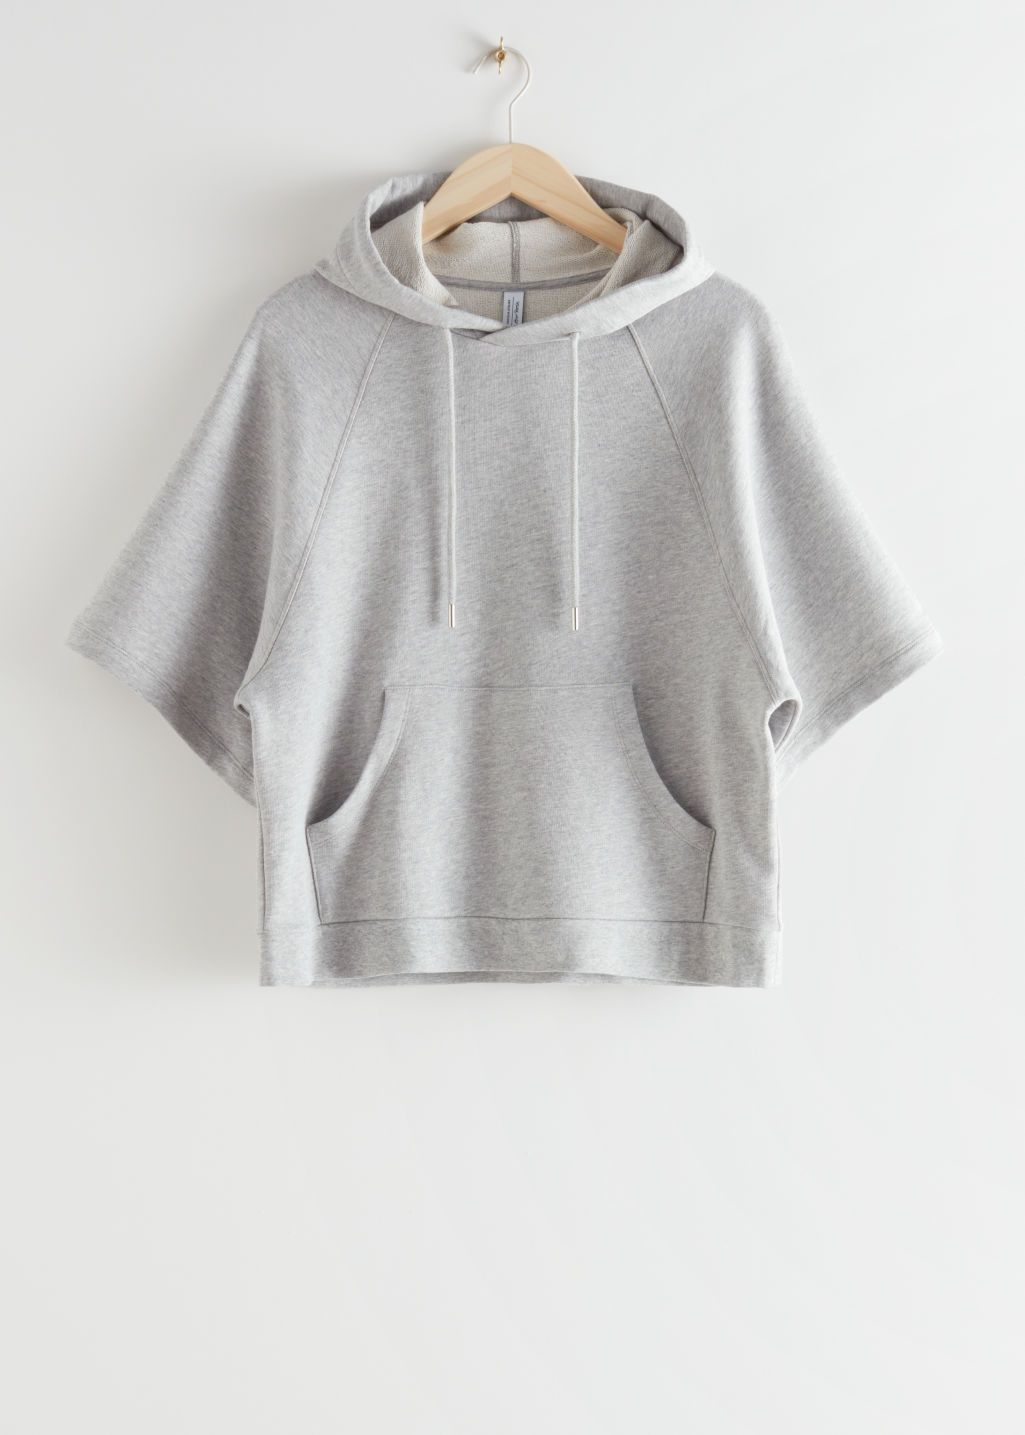 Hooded Raglan Sleeve Top - Grey Melange - Sweatshirts & Hoodies - & Other Stories